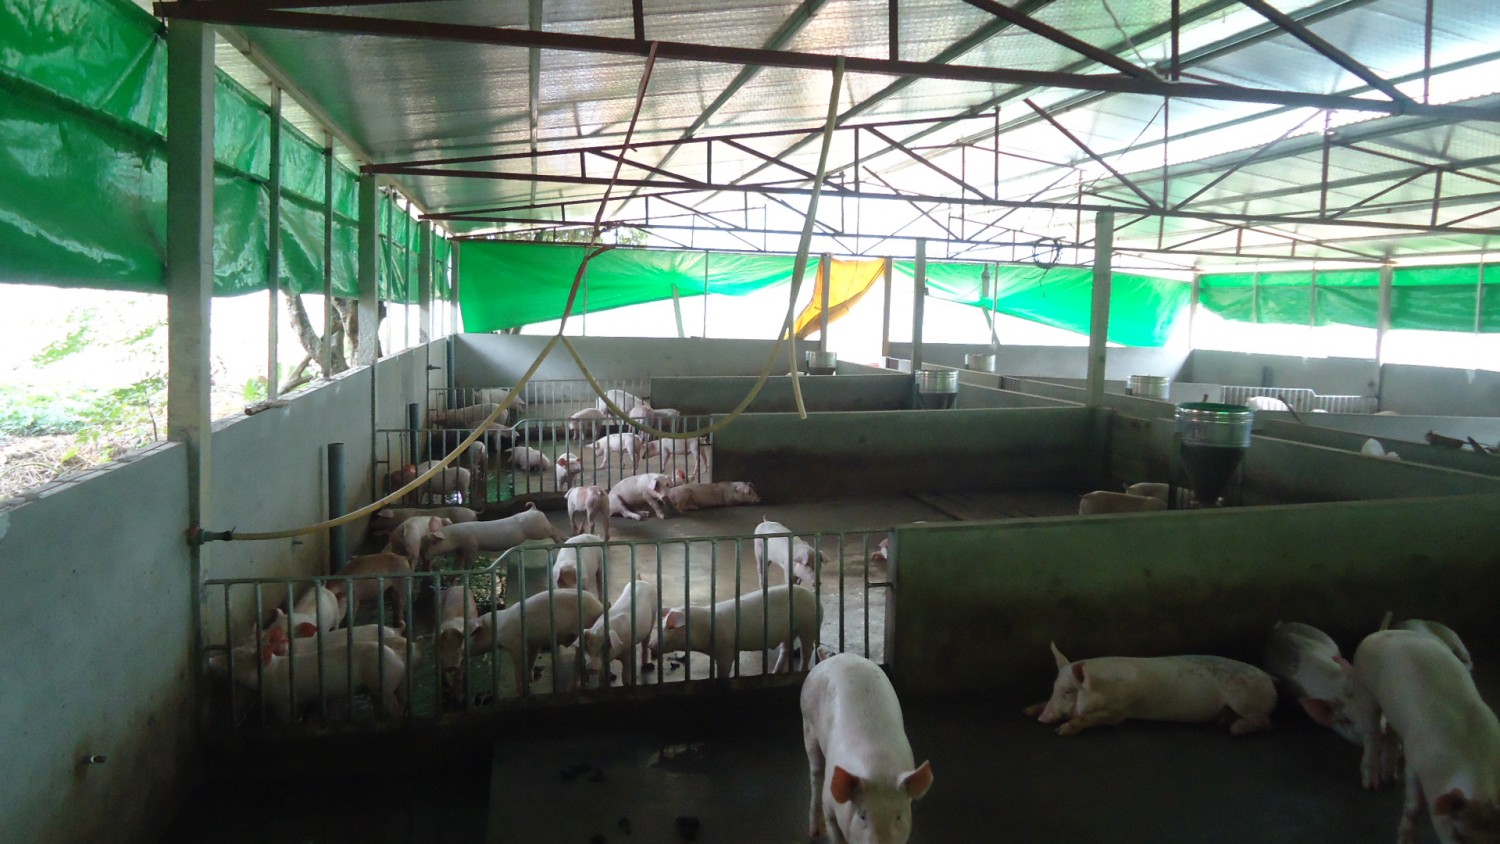 Trang trại chăn nuôi của gia đình ông Đỗ Xuân Thành, thị trấn Phong Hải, huyện Bảo Thắng